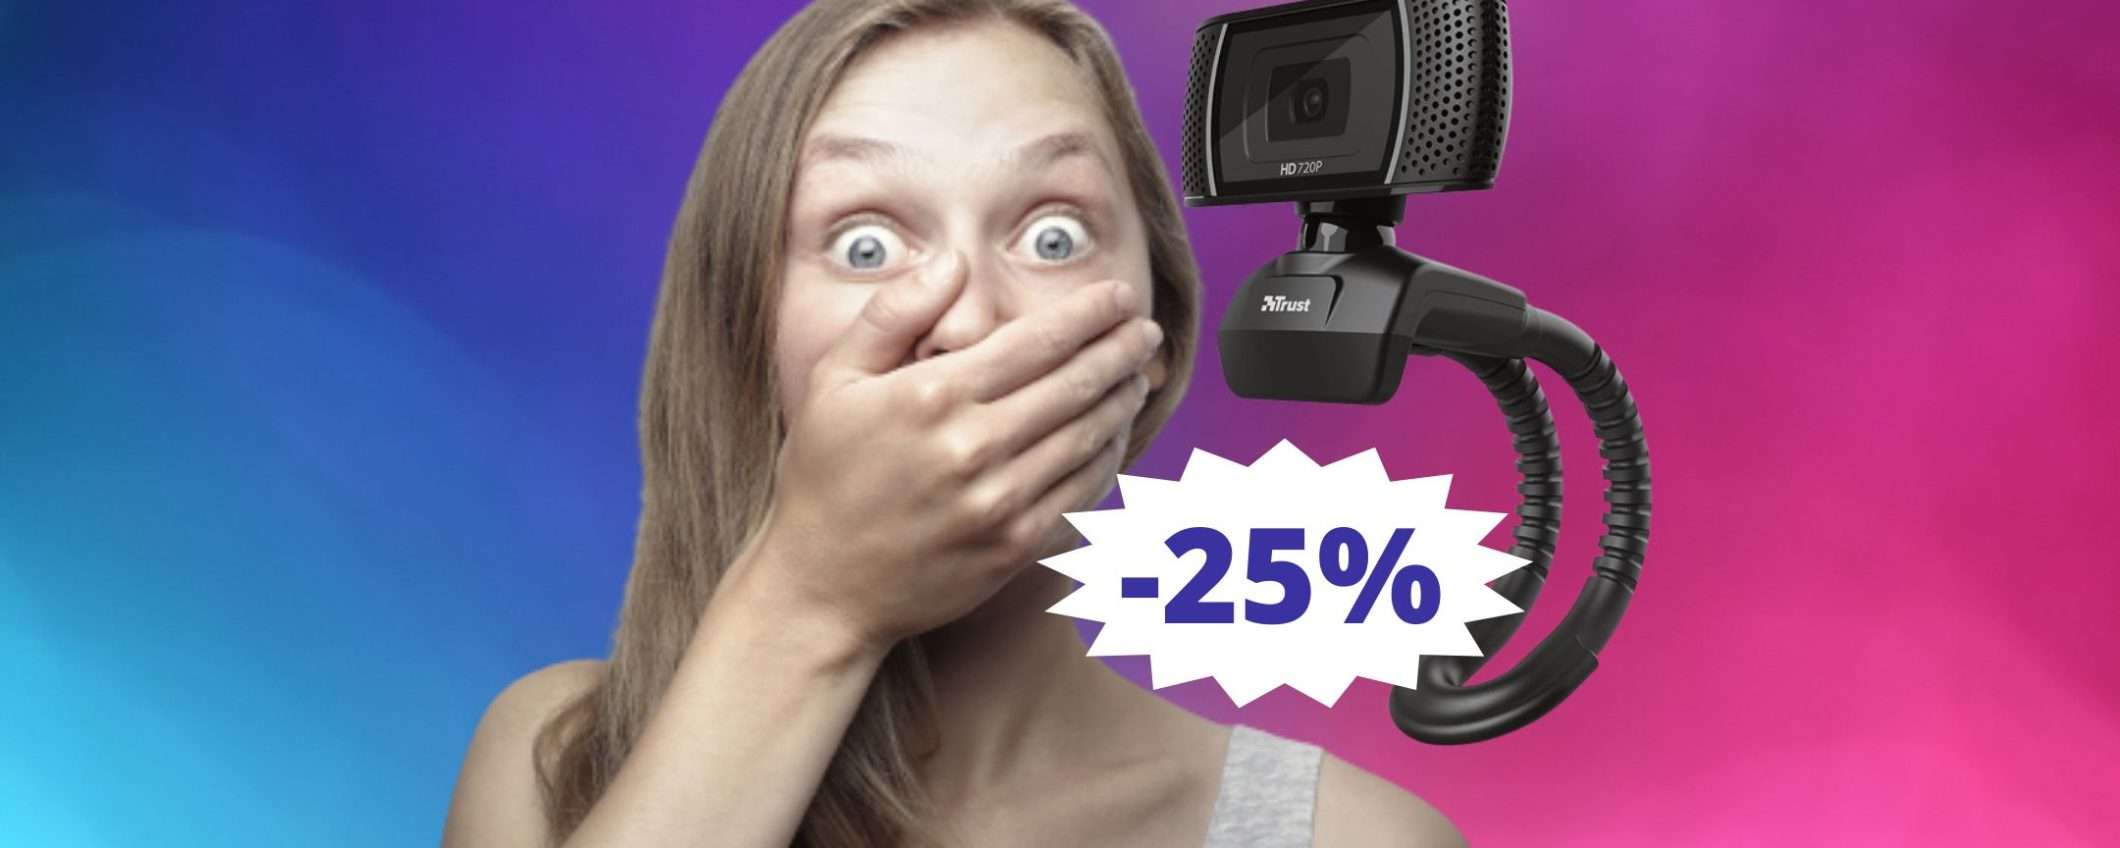 Trust Trino: la webcam DEFINITVA a questo prezzo (-25%)